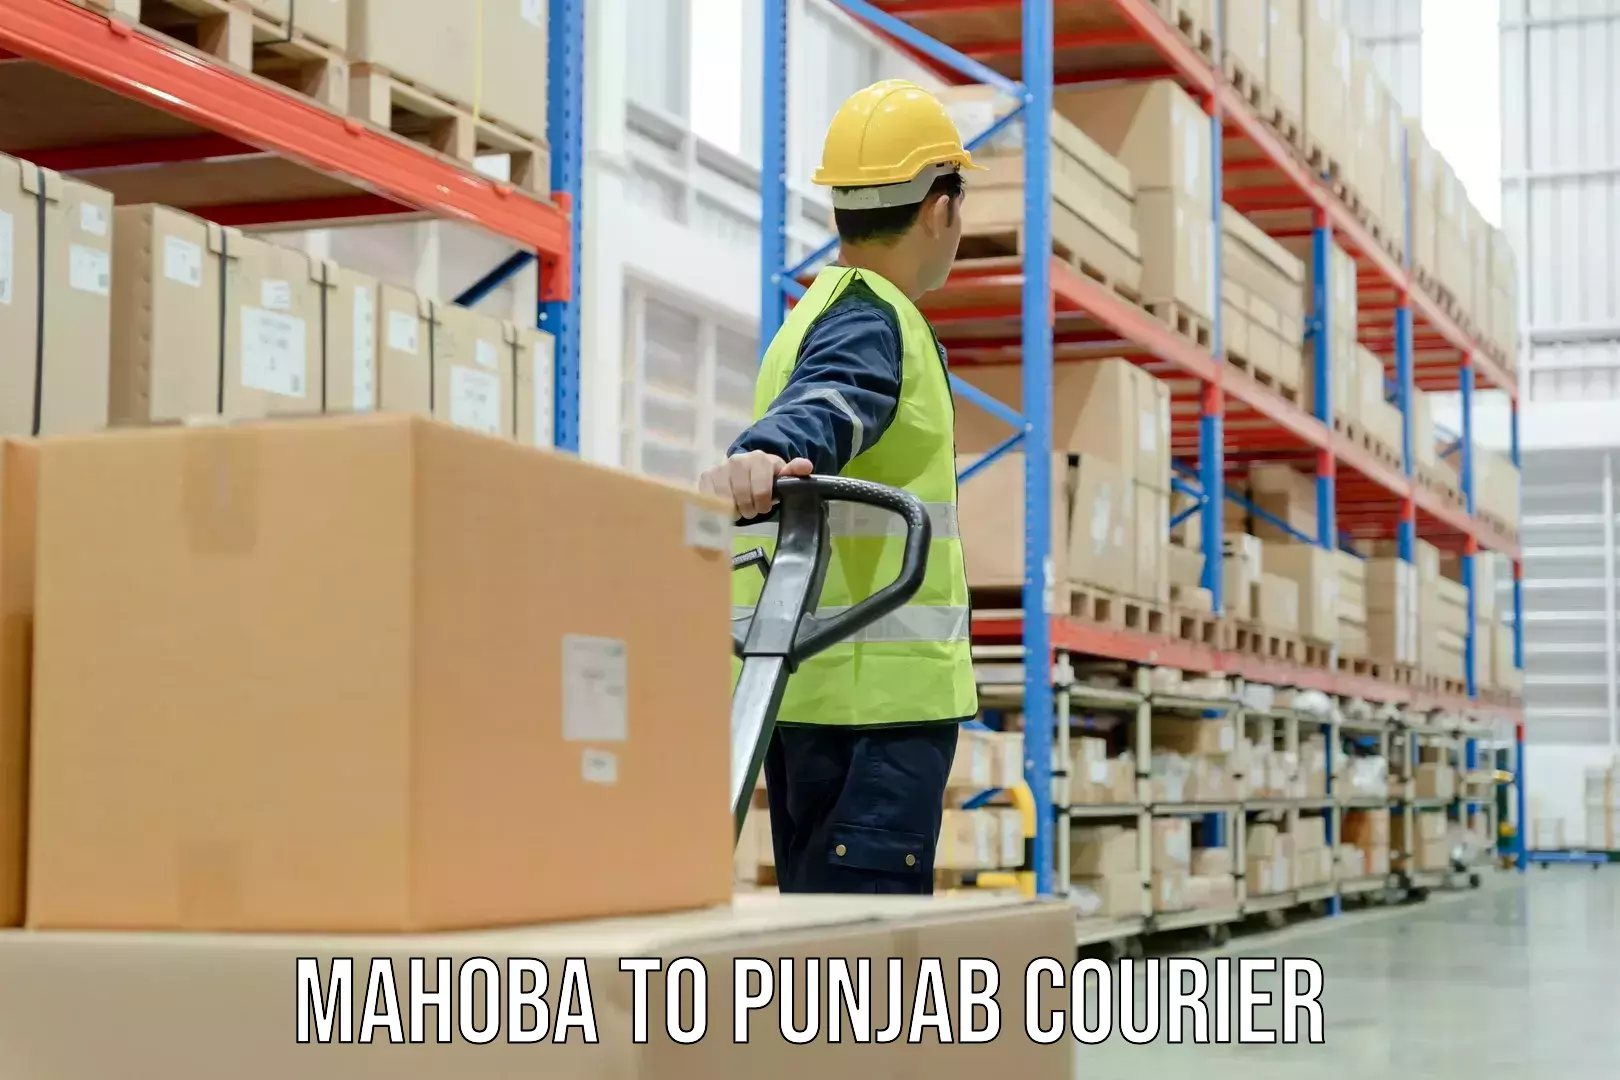 Door-to-door freight service Mahoba to Amritsar